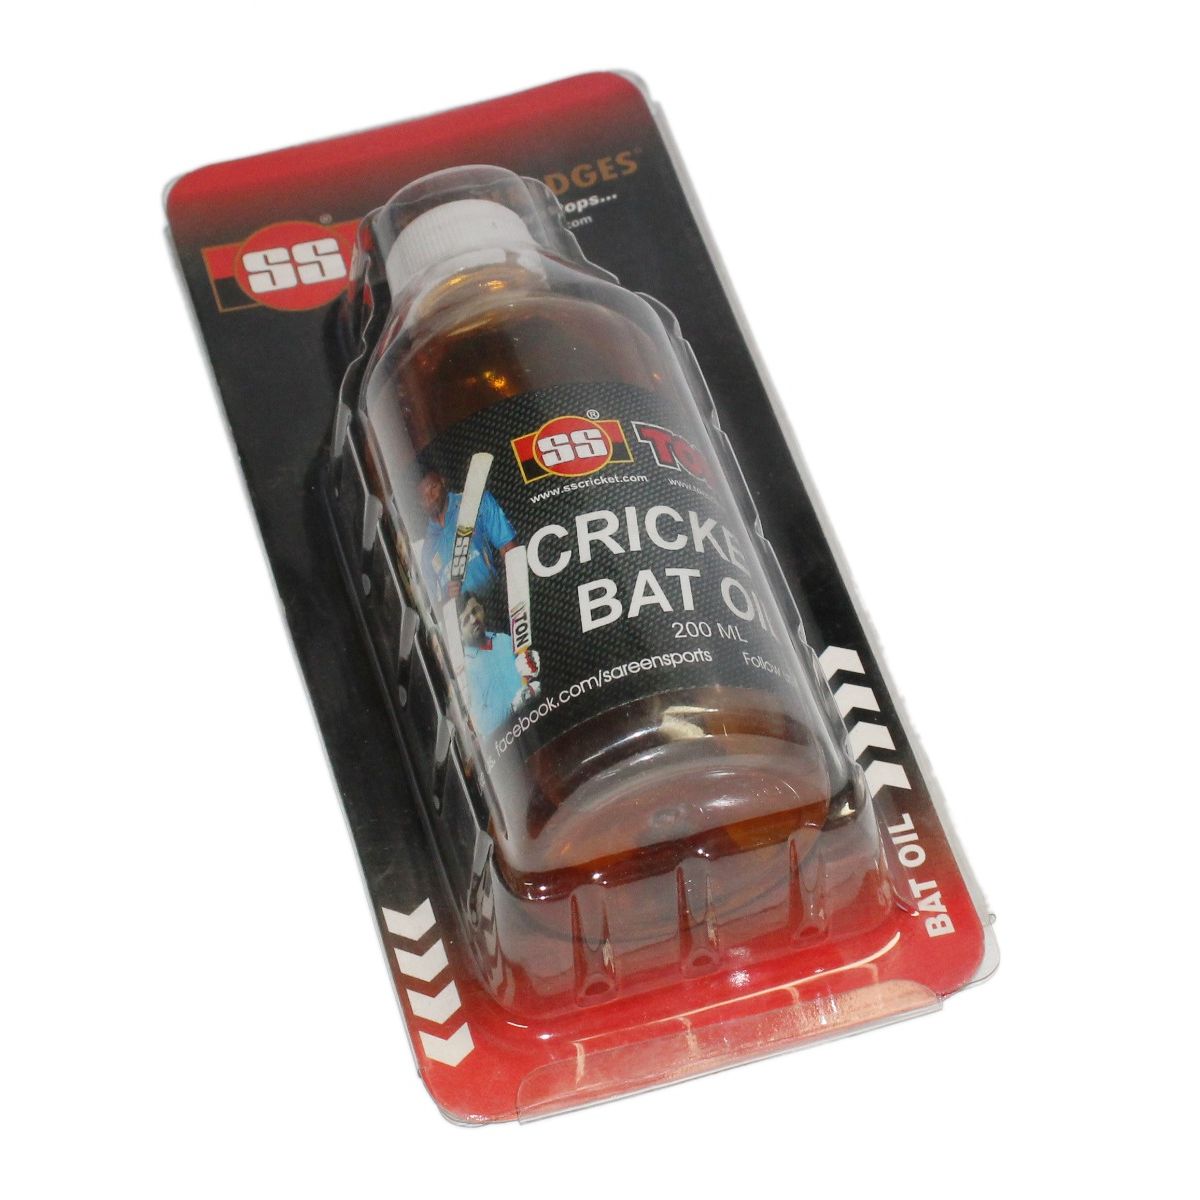 SS Ton Cricket Bat oil